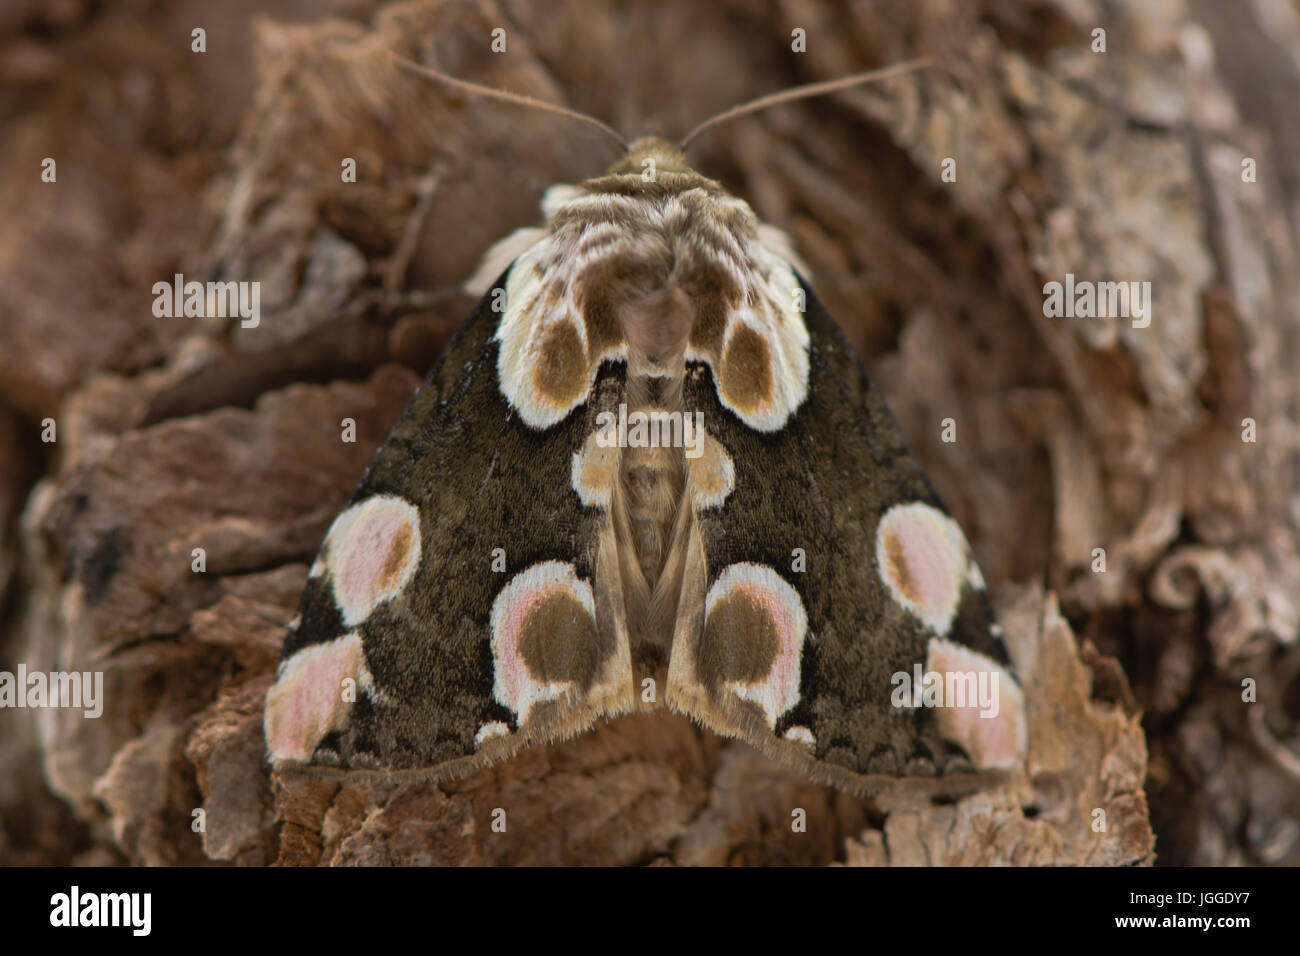 Pfirsichblüte (Thyatira Batis) Motte. Britische Insekt in der Familie Drepanidae ruht auf Rinde, mit attraktiven Markierungen auf Vorderflügel Stockfoto